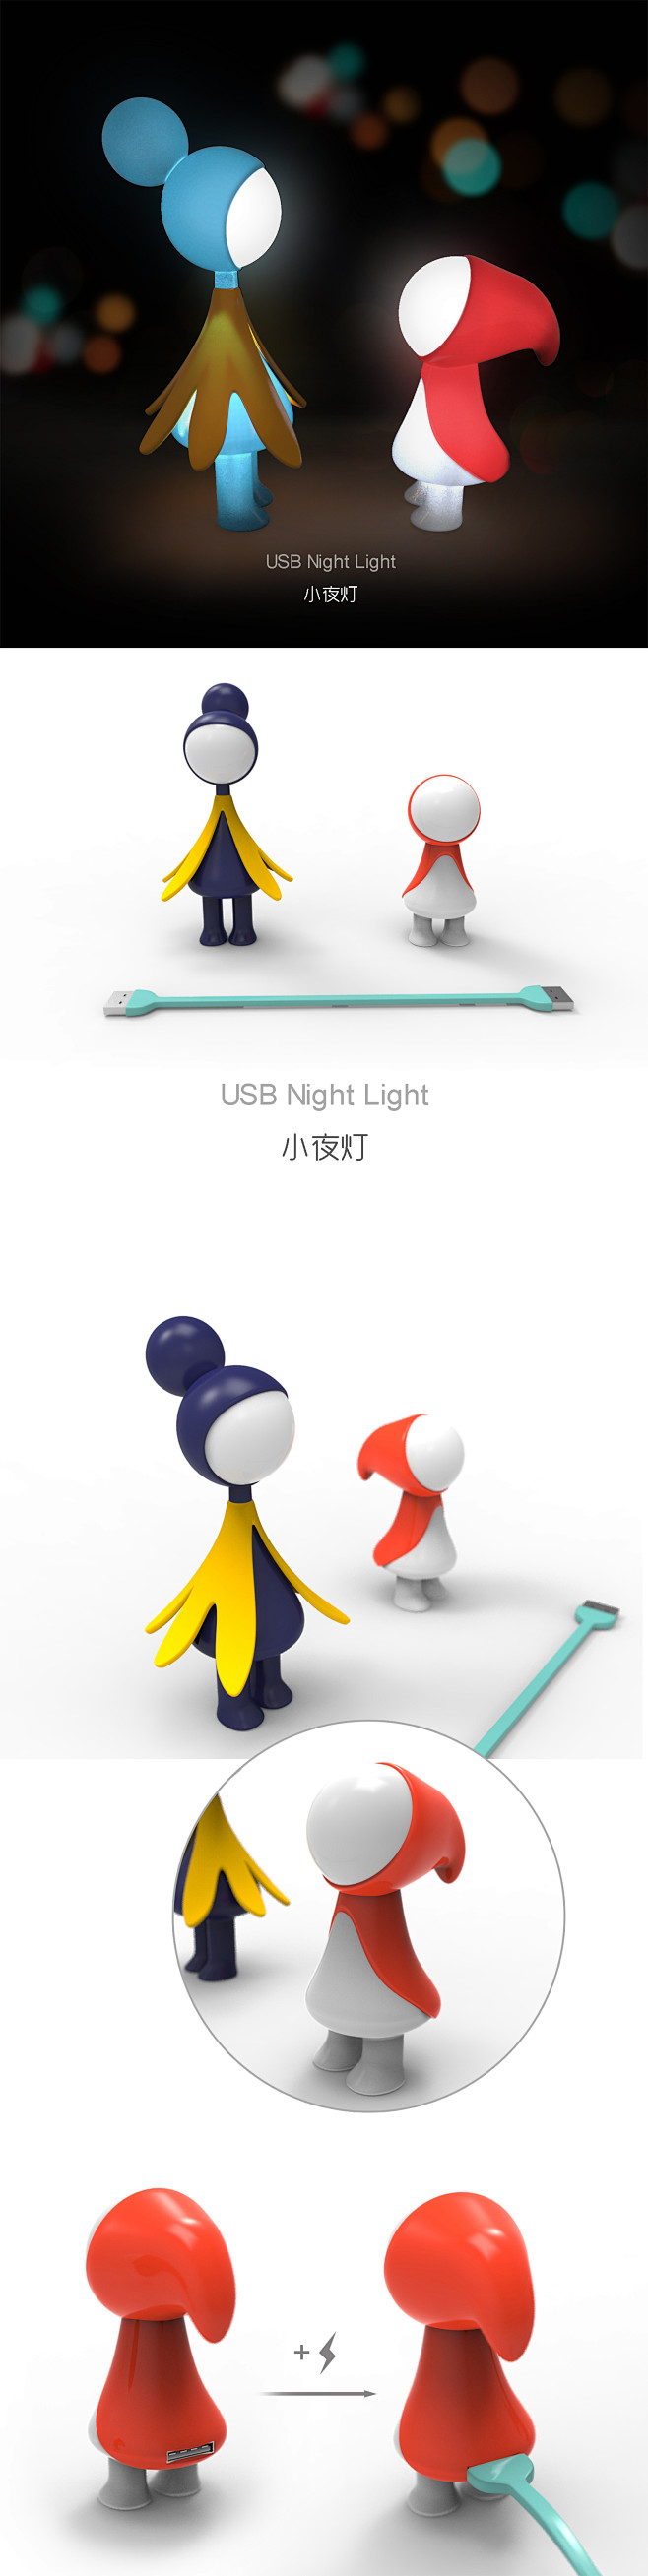 USB小夜灯 Night Light